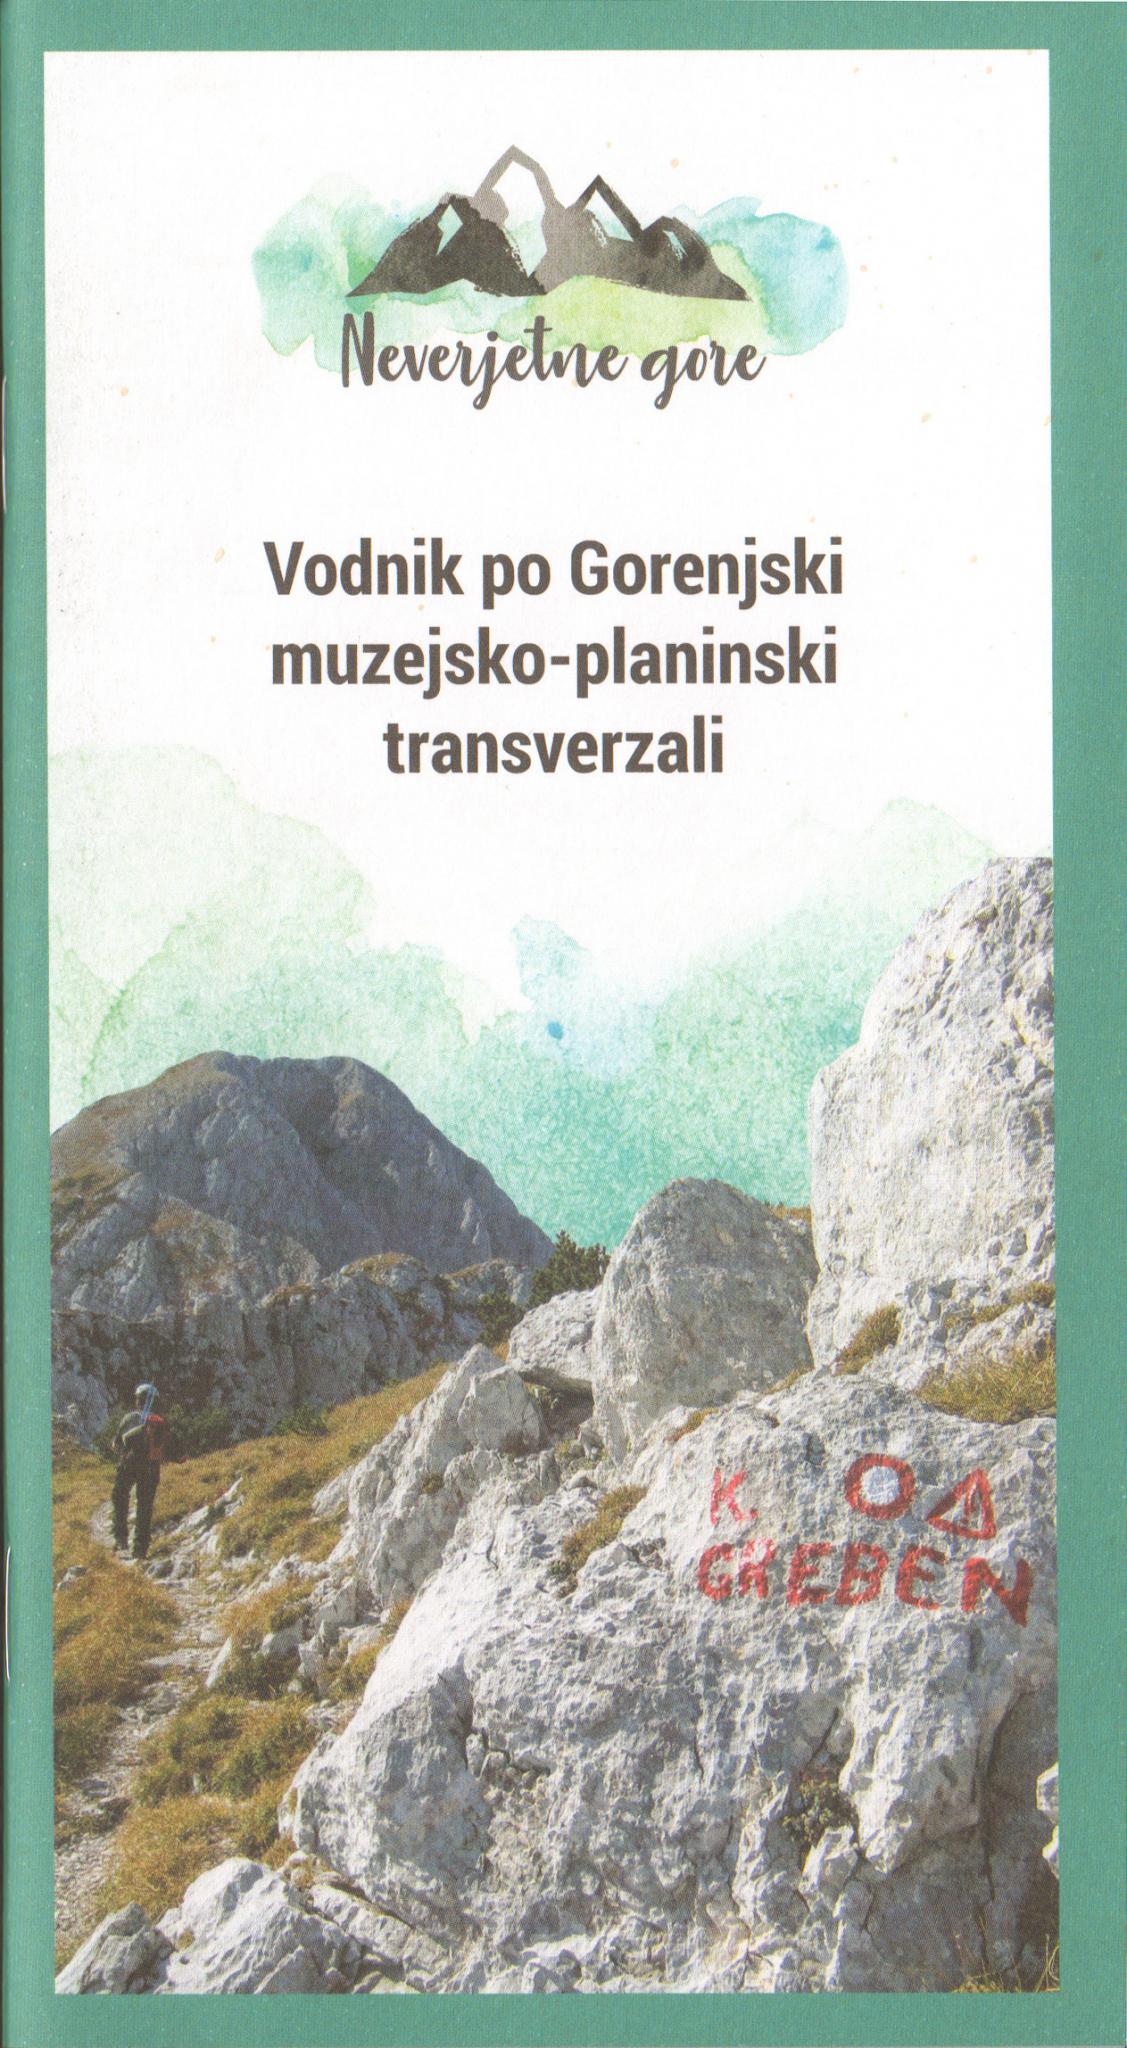 (Slovenski) Vodnik po Gorenjski muzejsko-planinski transverzali